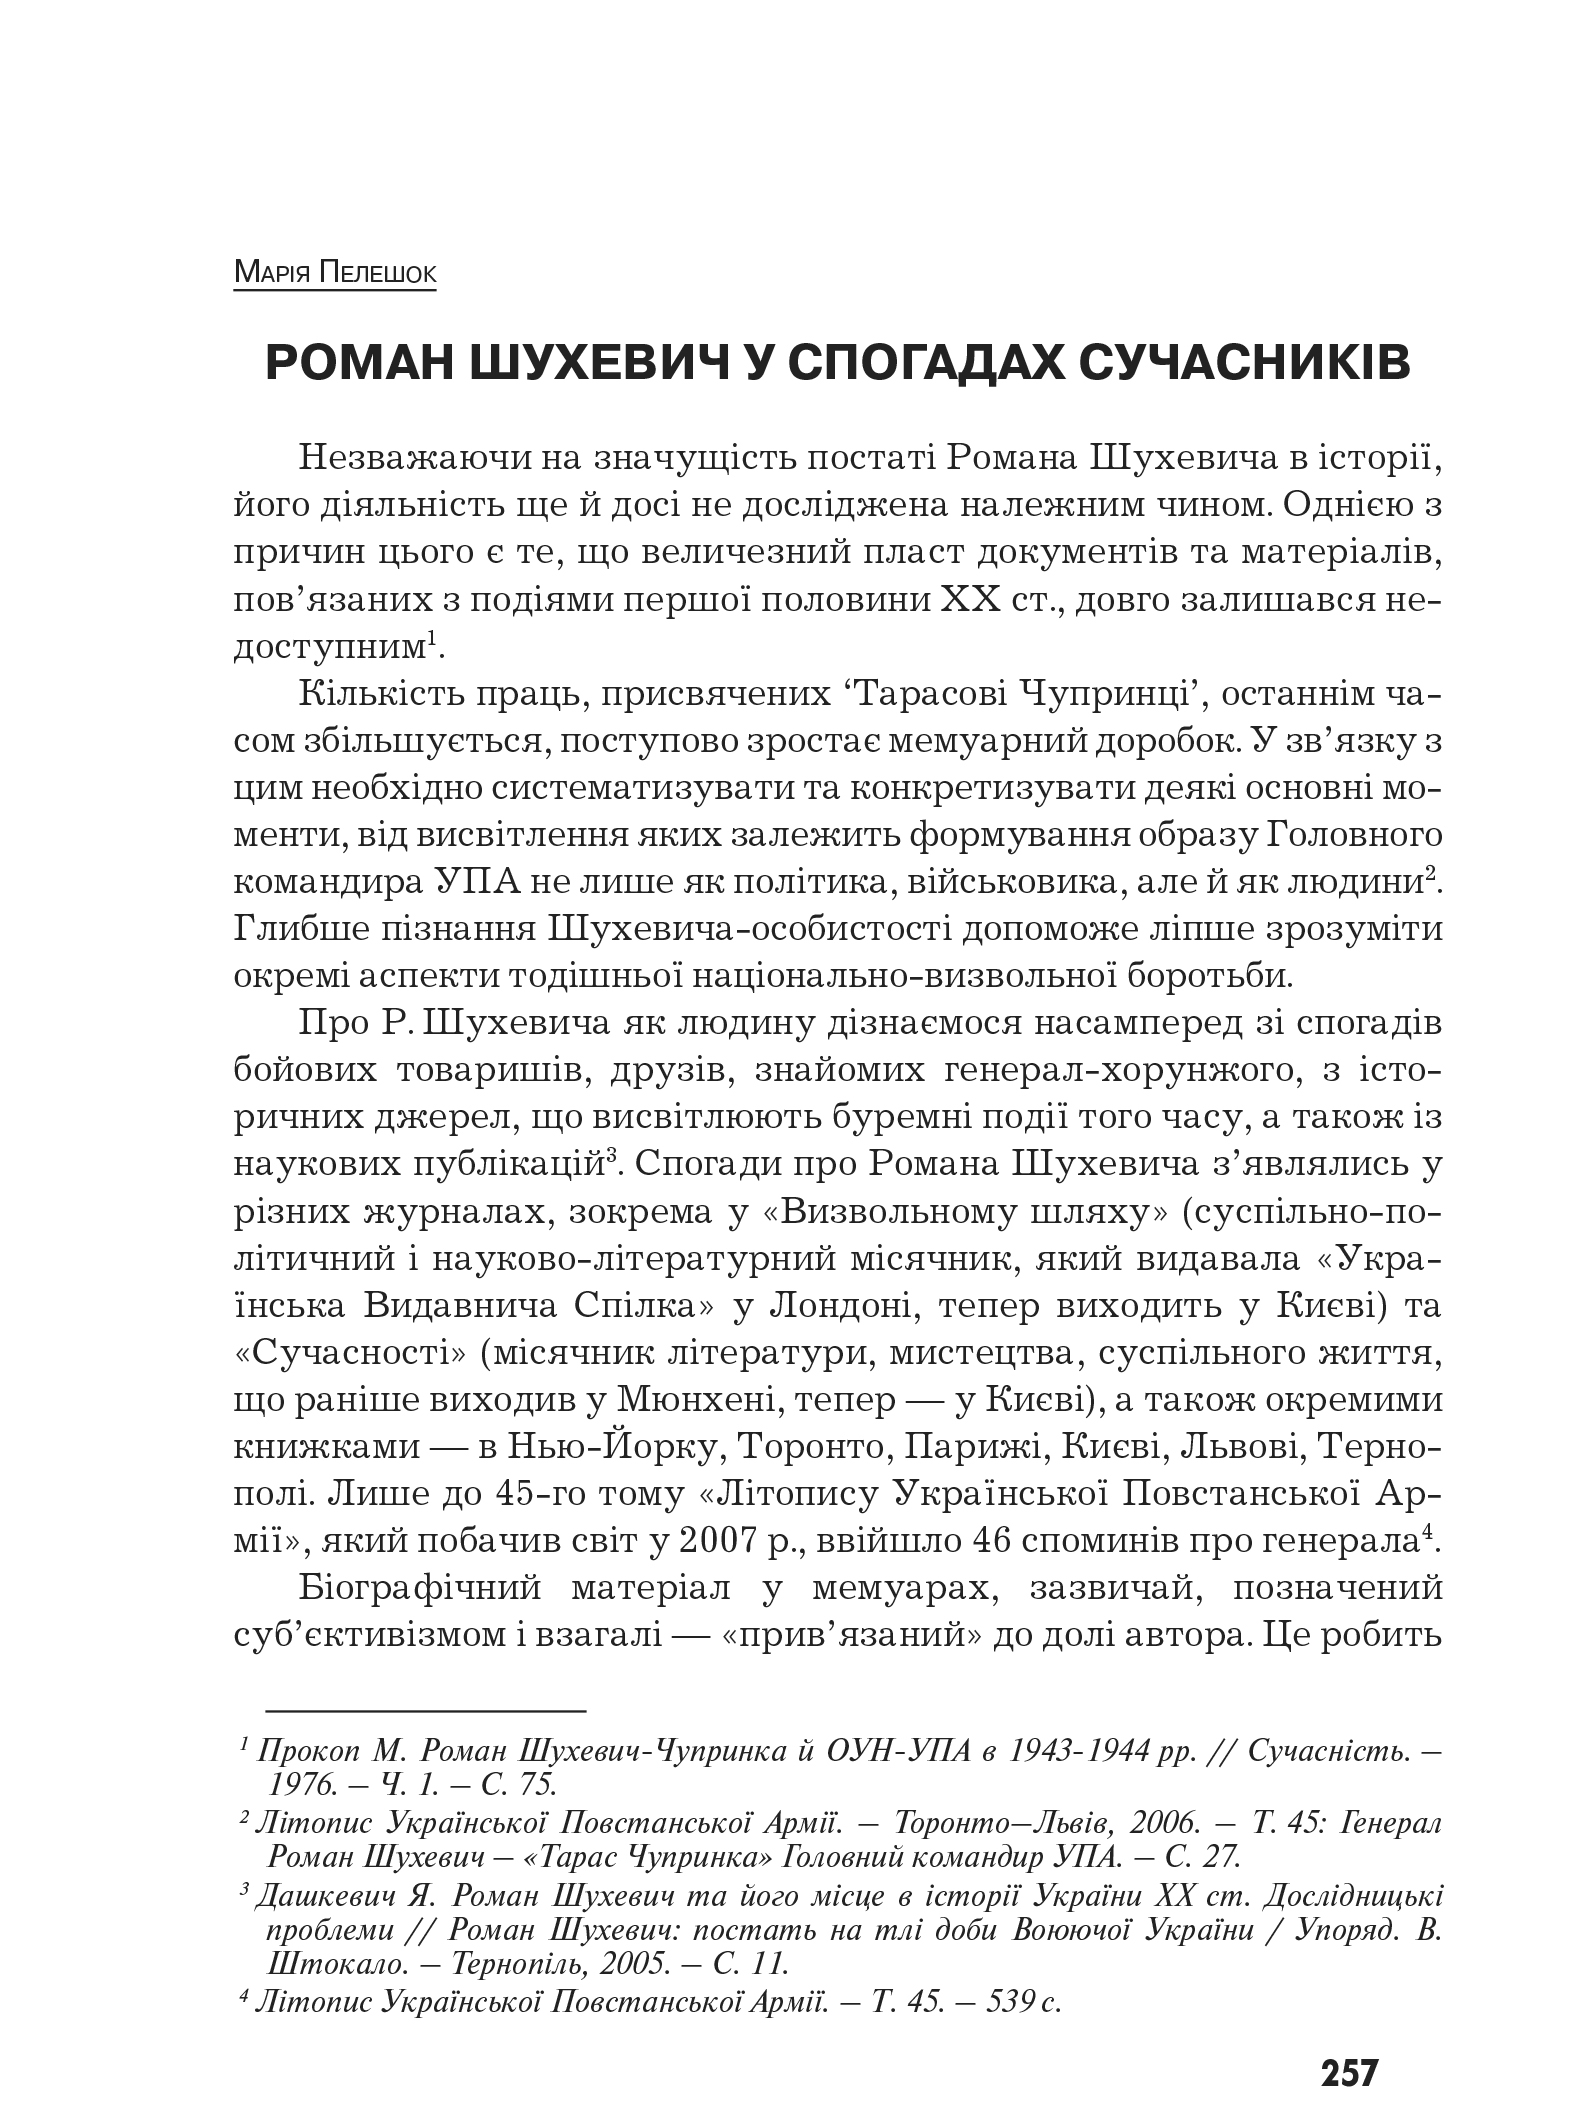 Український визвольний рух №10, ст. 257 - 266